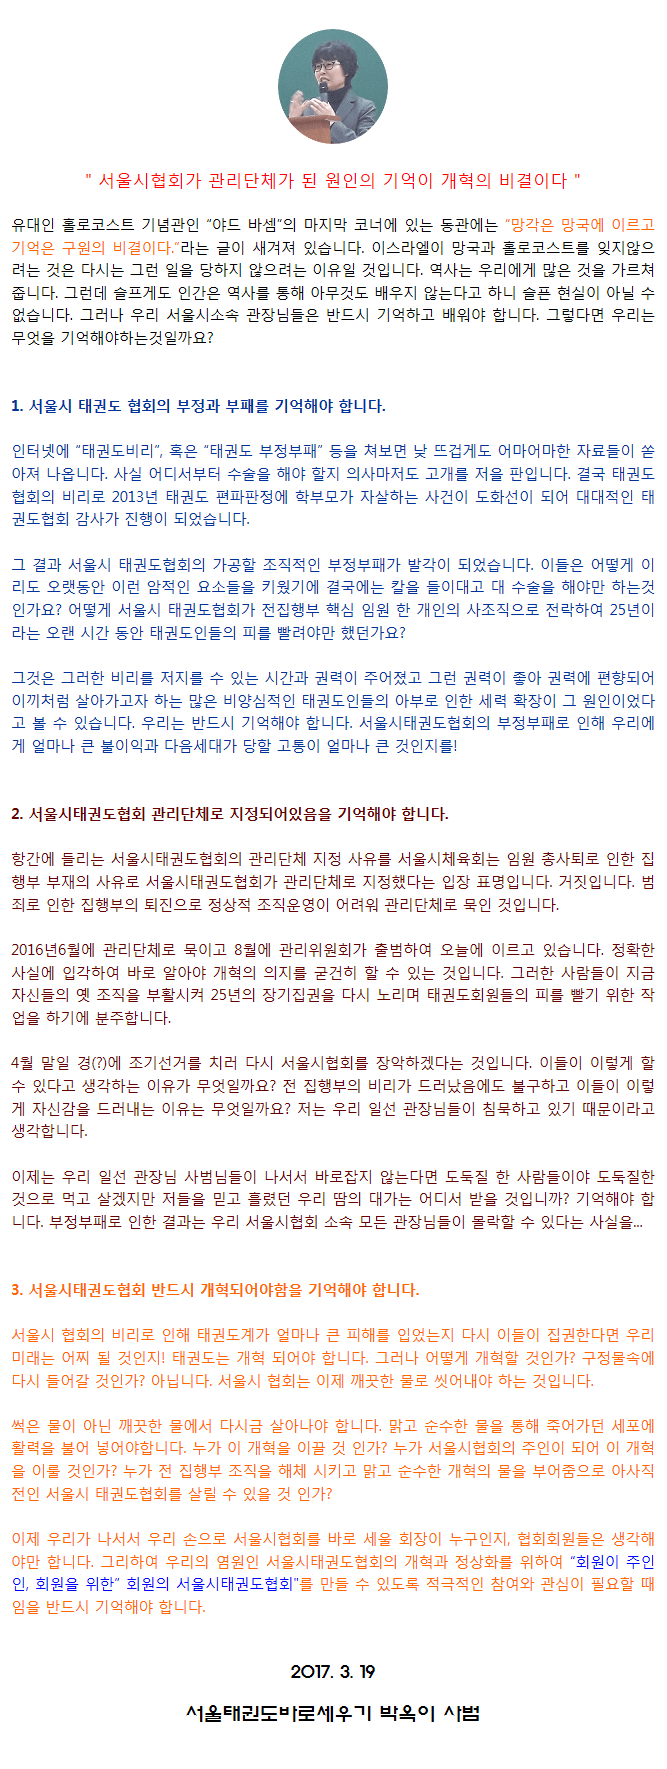 20170319_서울시협회가관리단체가된원인의기억은개혁의비결이다.gif